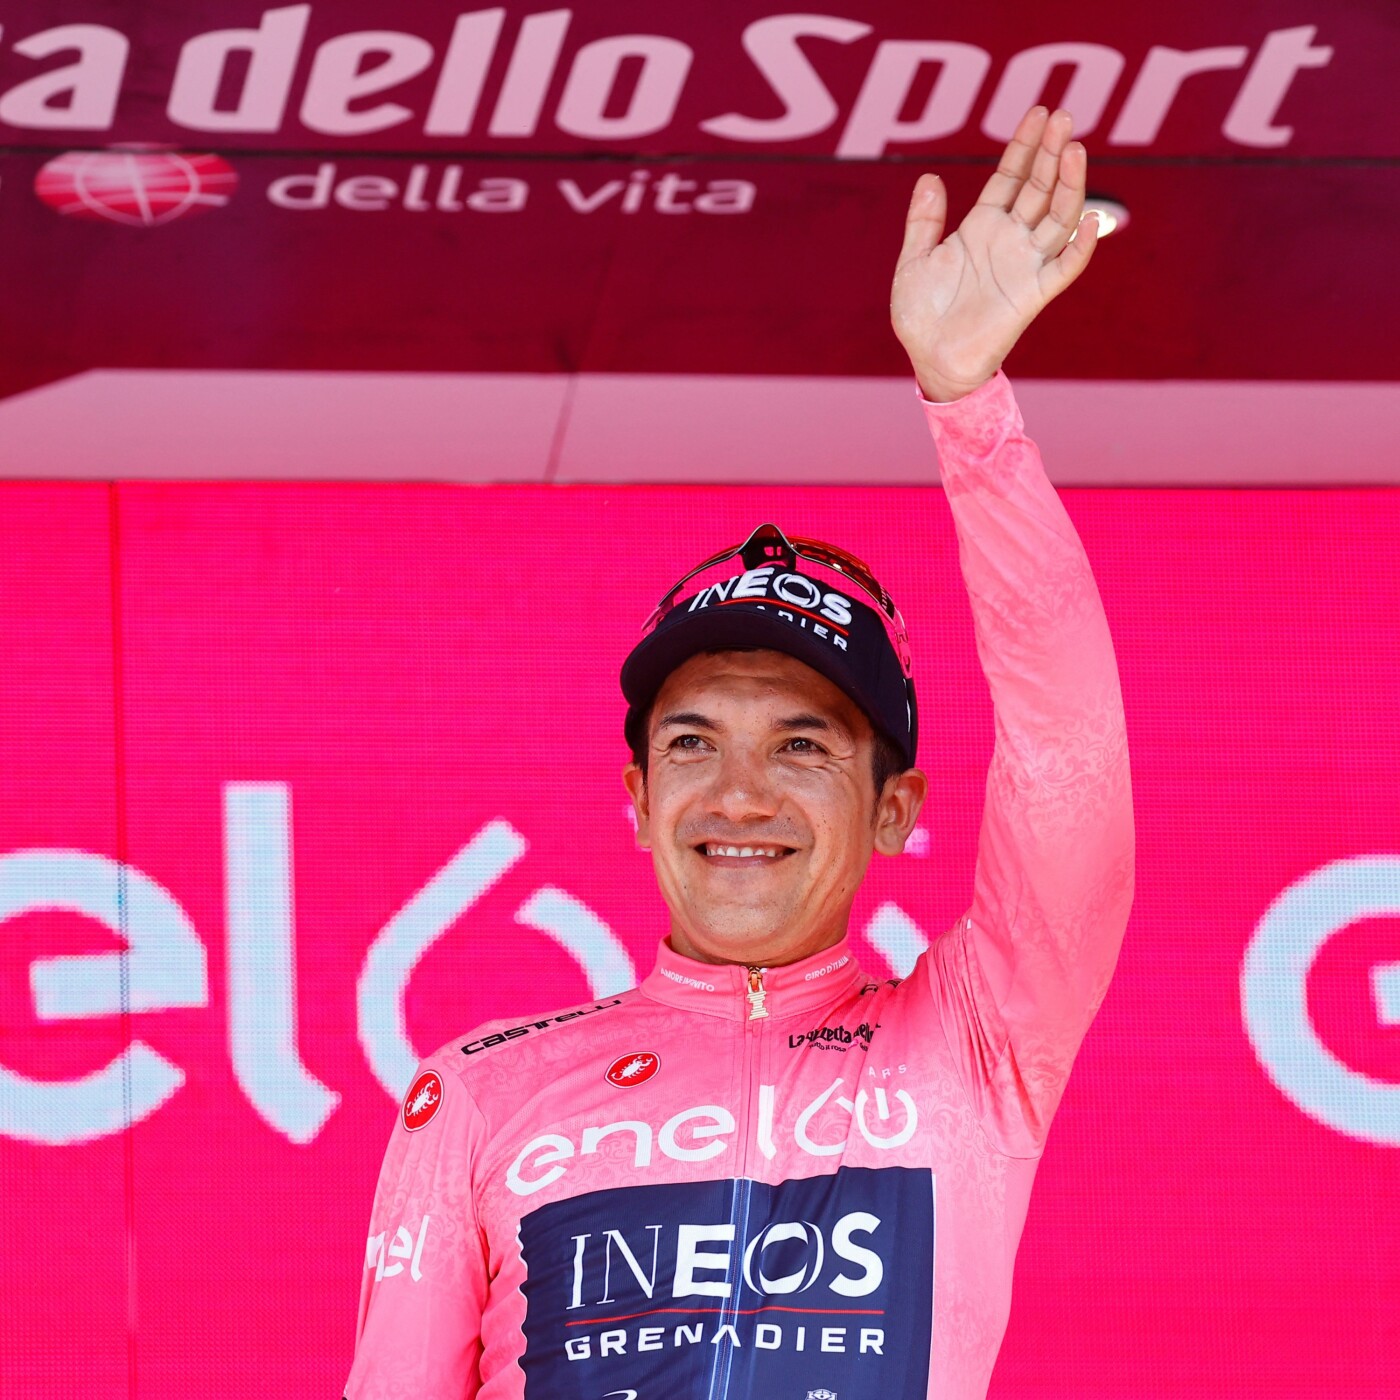 Hármasban a Giro középső hetéről - ESB podcast (05.22)